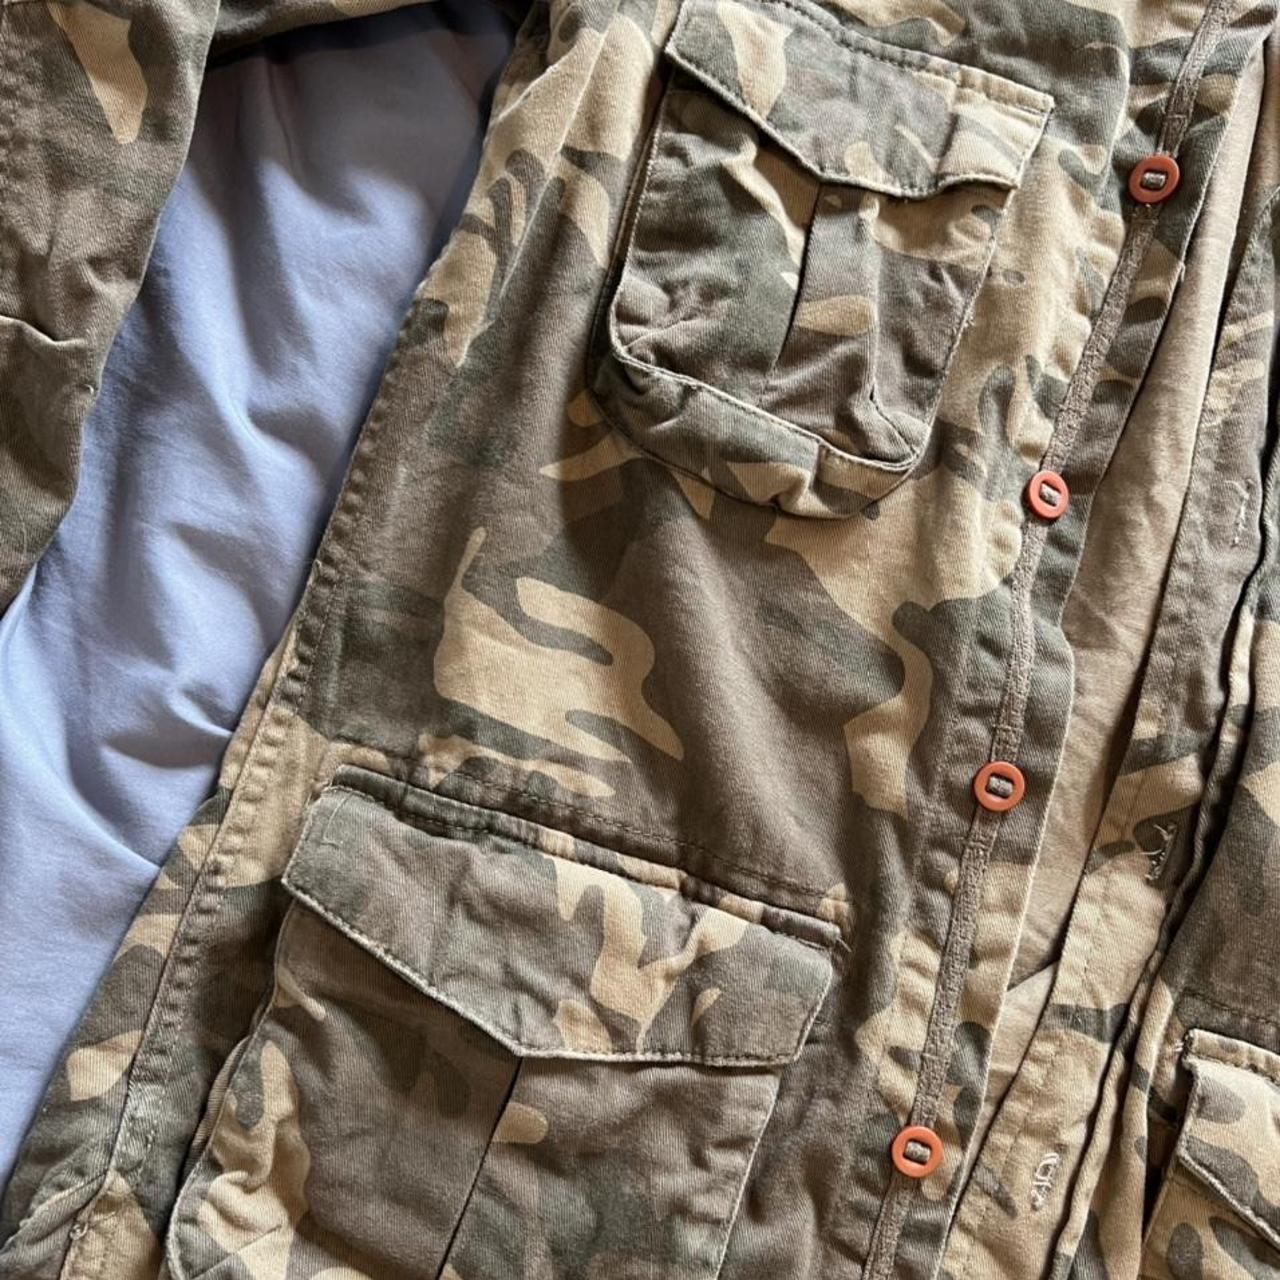 Criminal damage camouflage jacket size S, worn but... - Depop